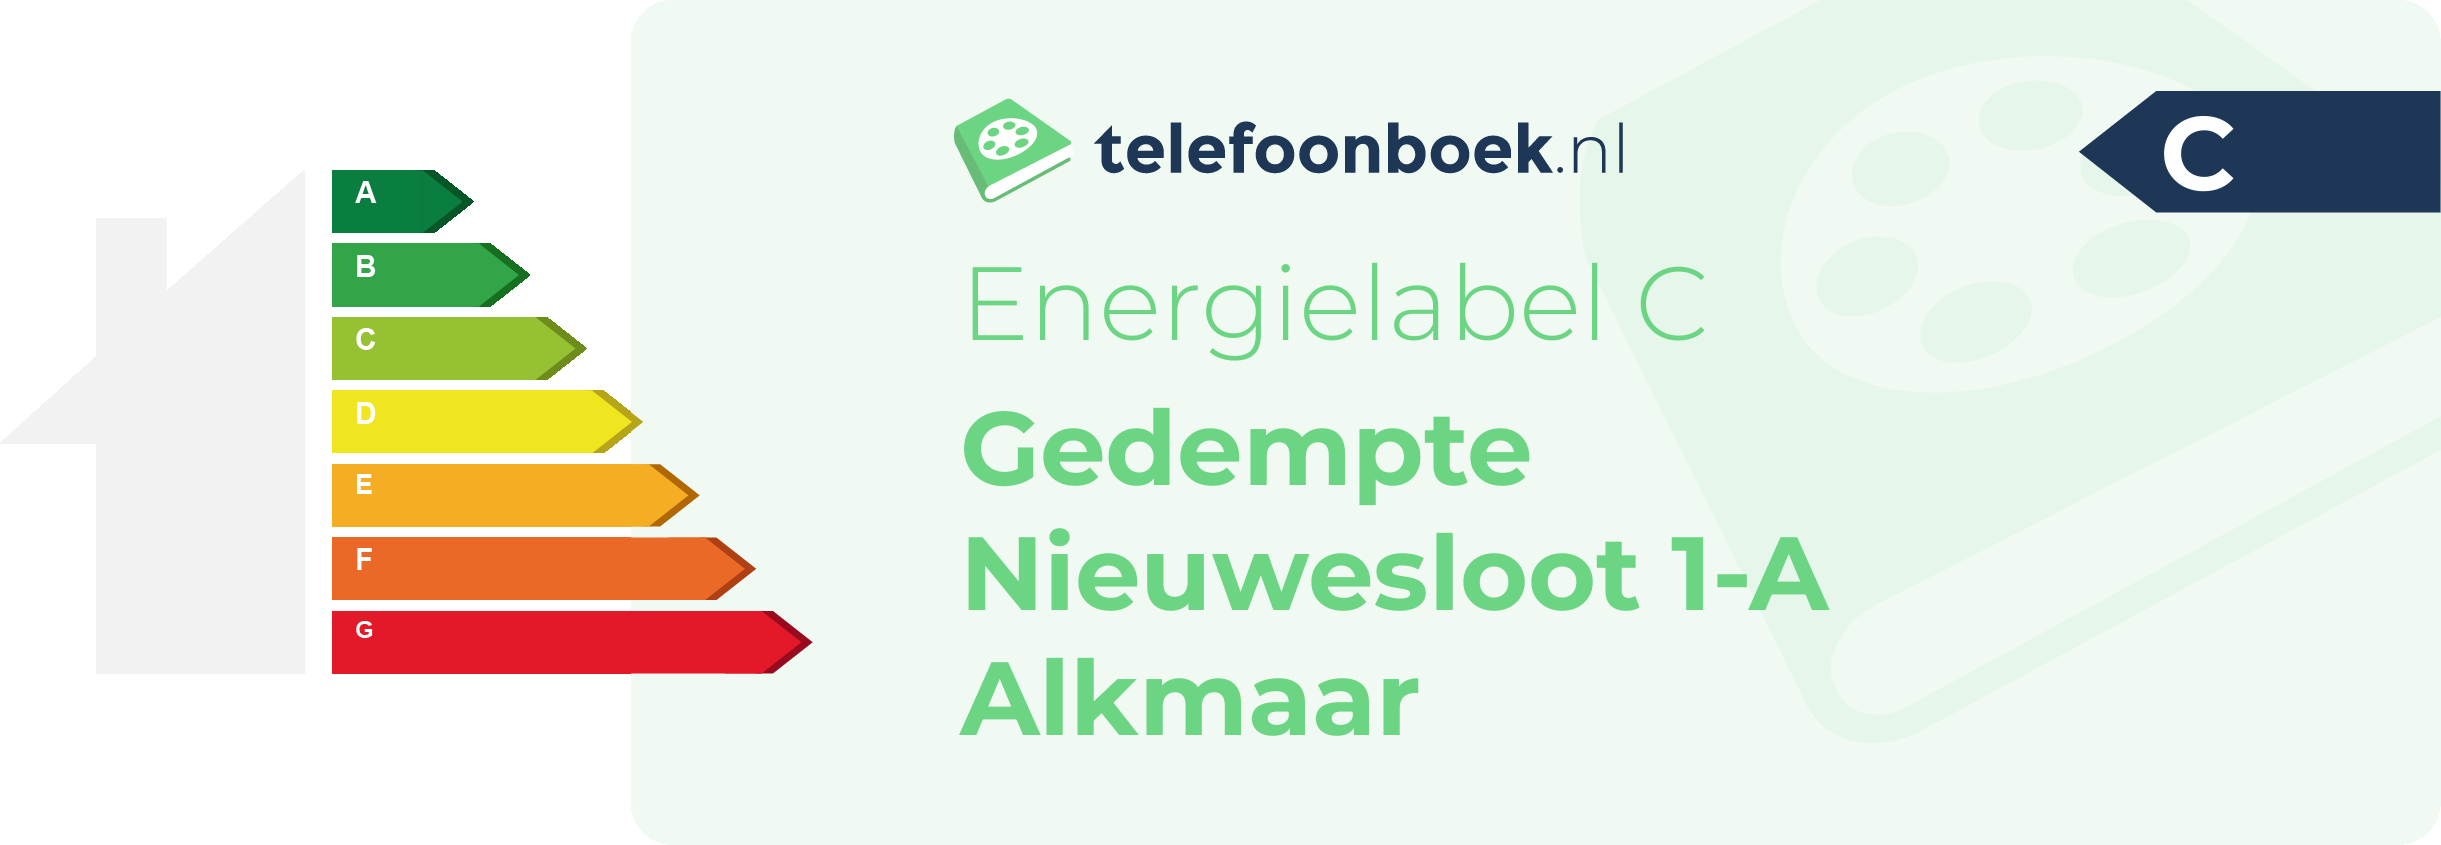 Energielabel Gedempte Nieuwesloot 1-A Alkmaar